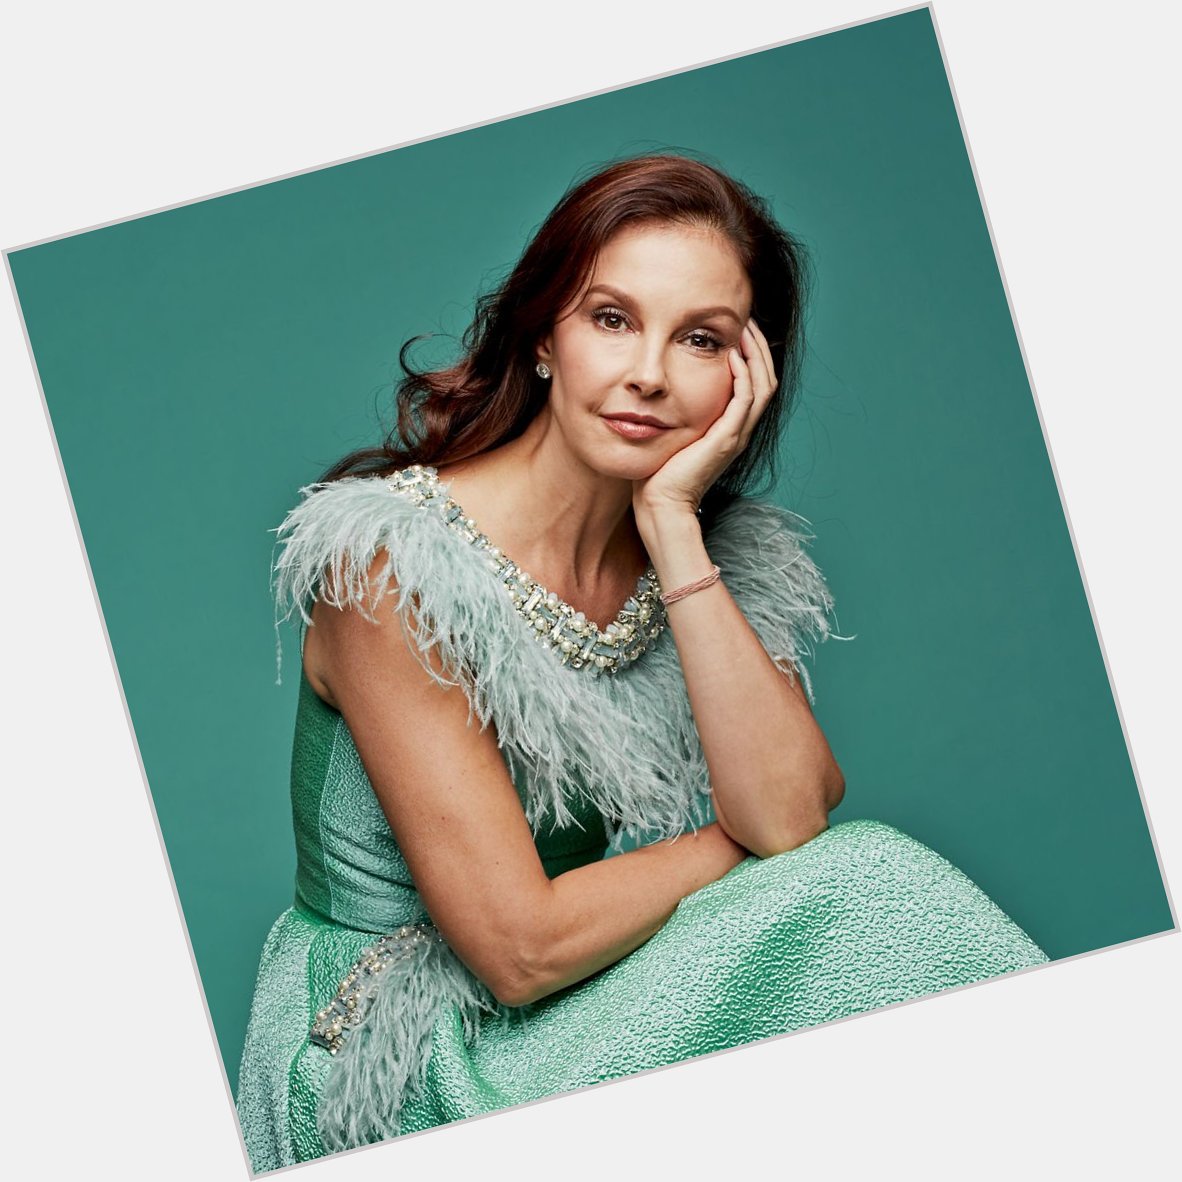 Happy 50th birthday to Ashley Judd today! 